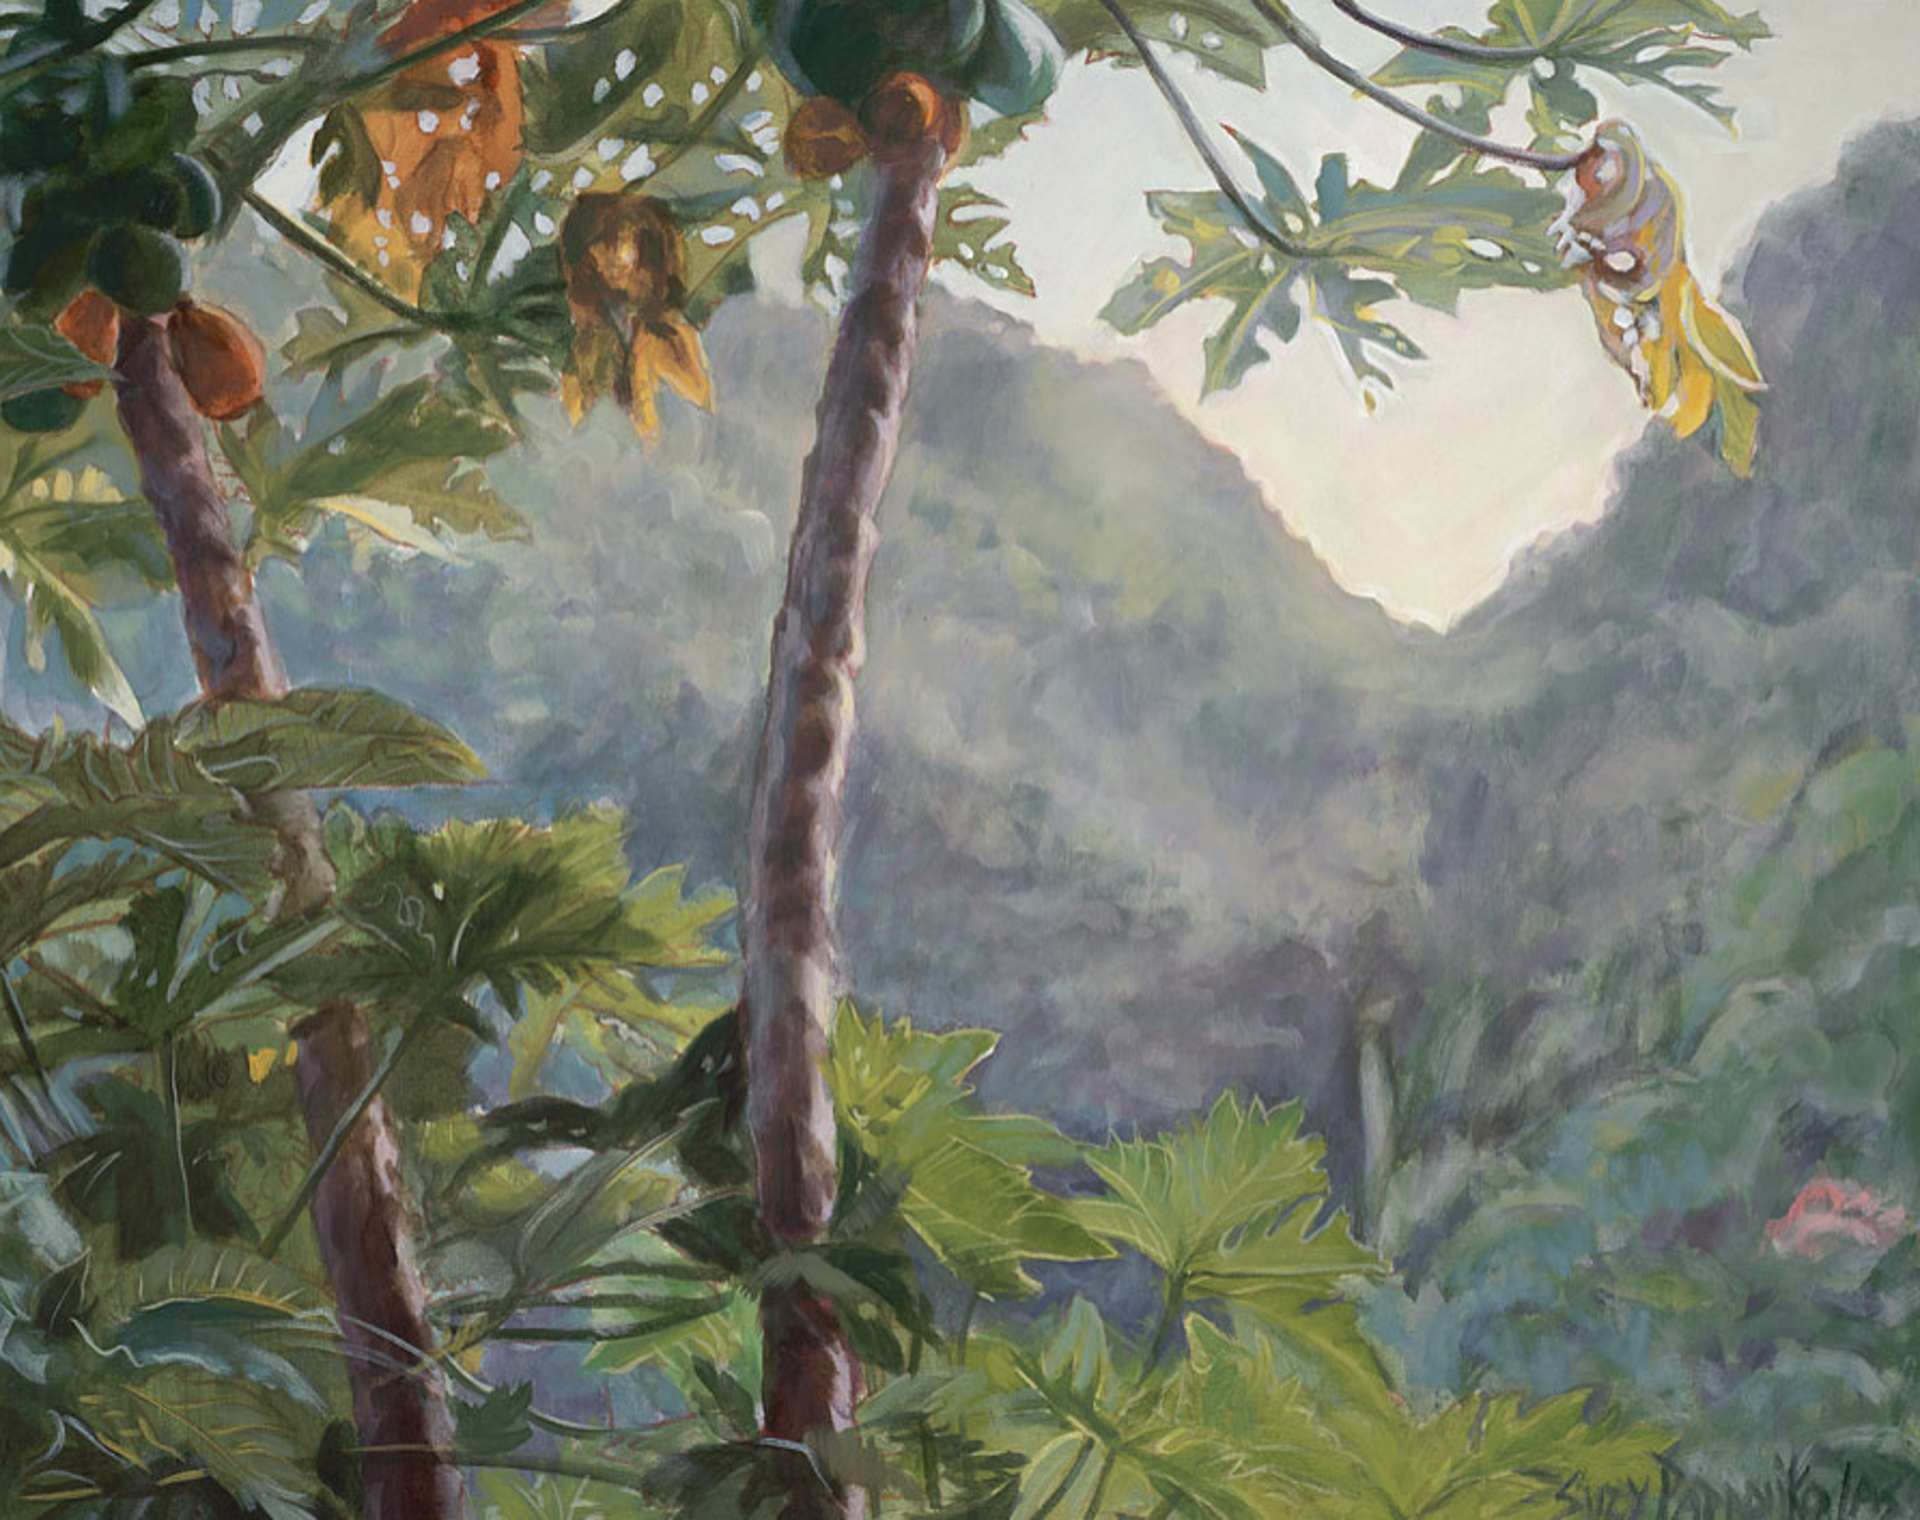 Keʻanae Valley by Suzy Papanikolas